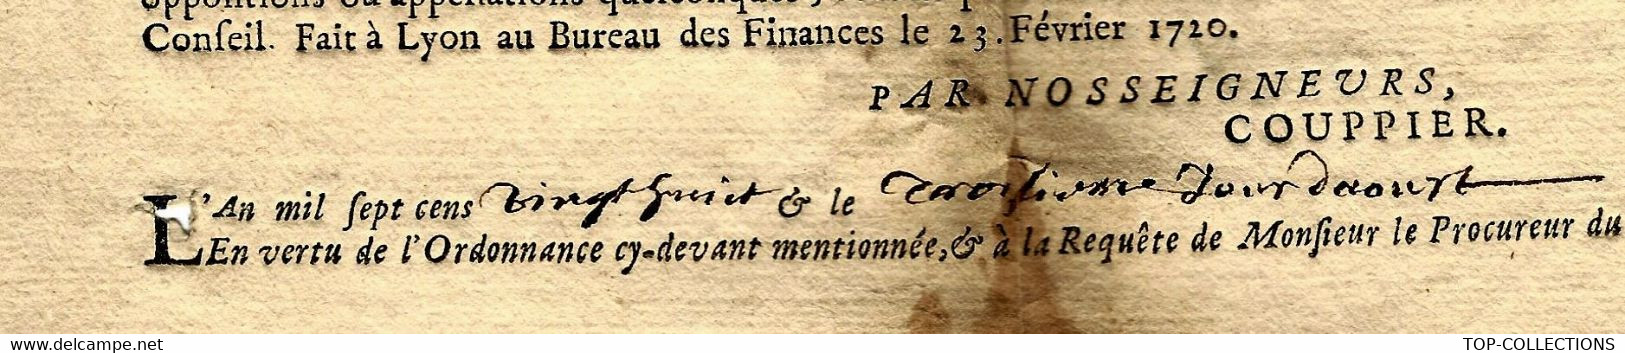 1728 DE PAR LE ROY GENERALITE DE LYON  PROCES VERBAL DE SAISIE AVEC SIGNATURE VOIR SCANS - Gebührenstempel, Impoststempel